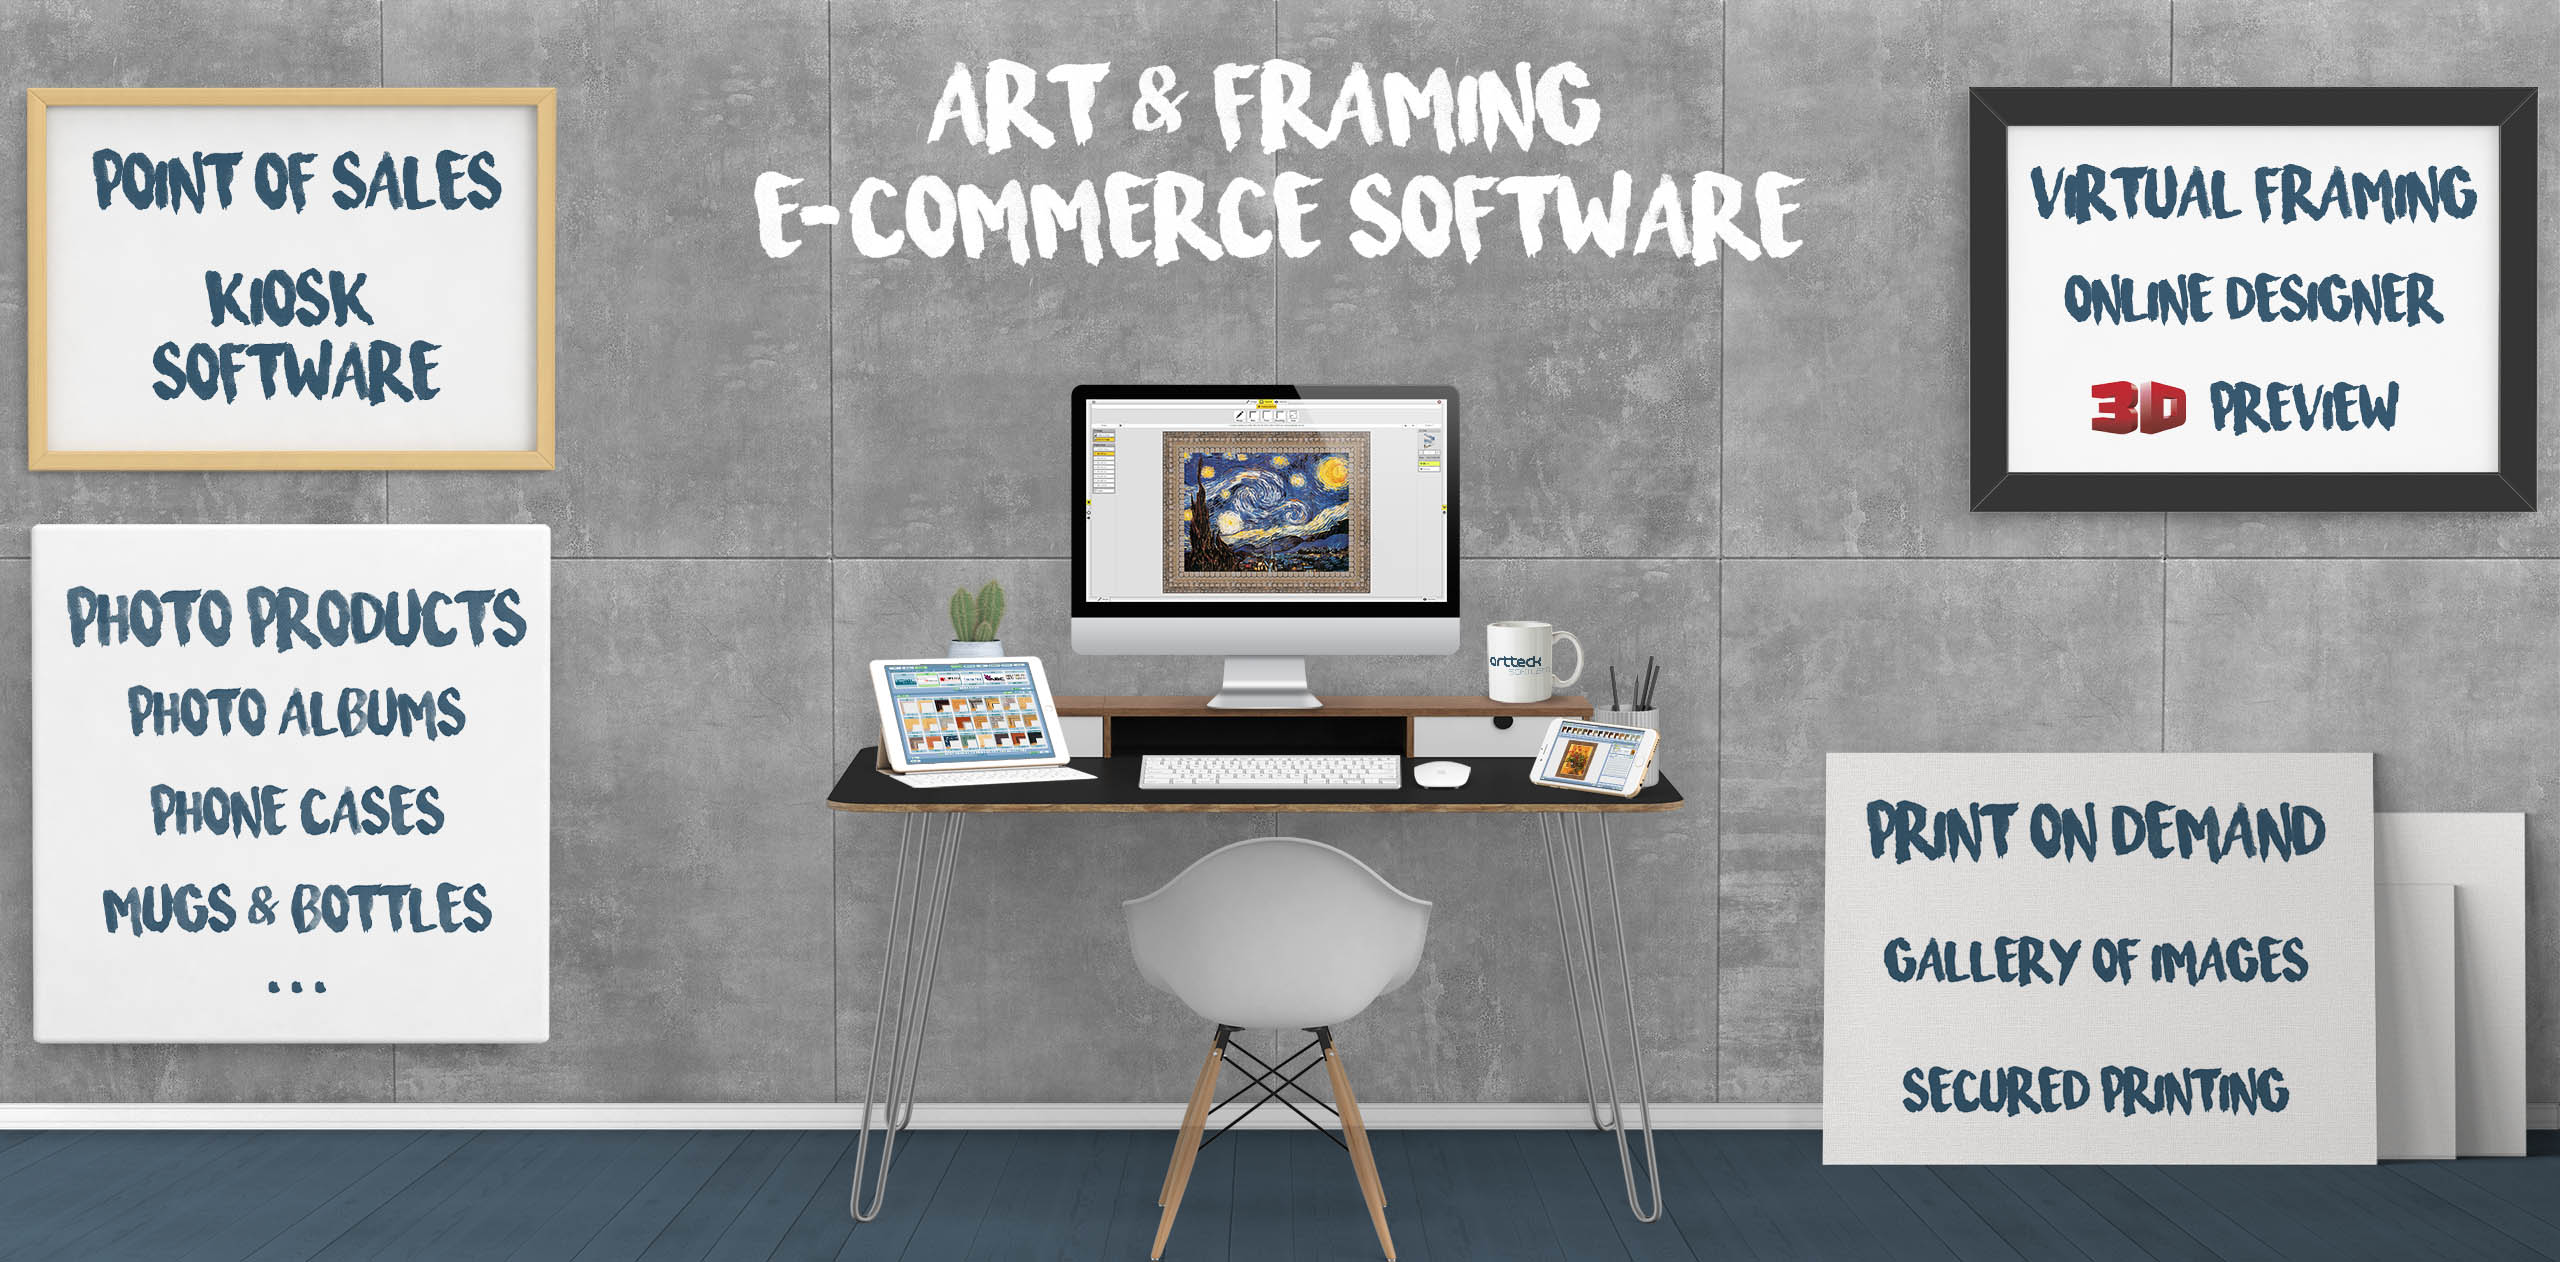 Art & Framing e-Commerce Software